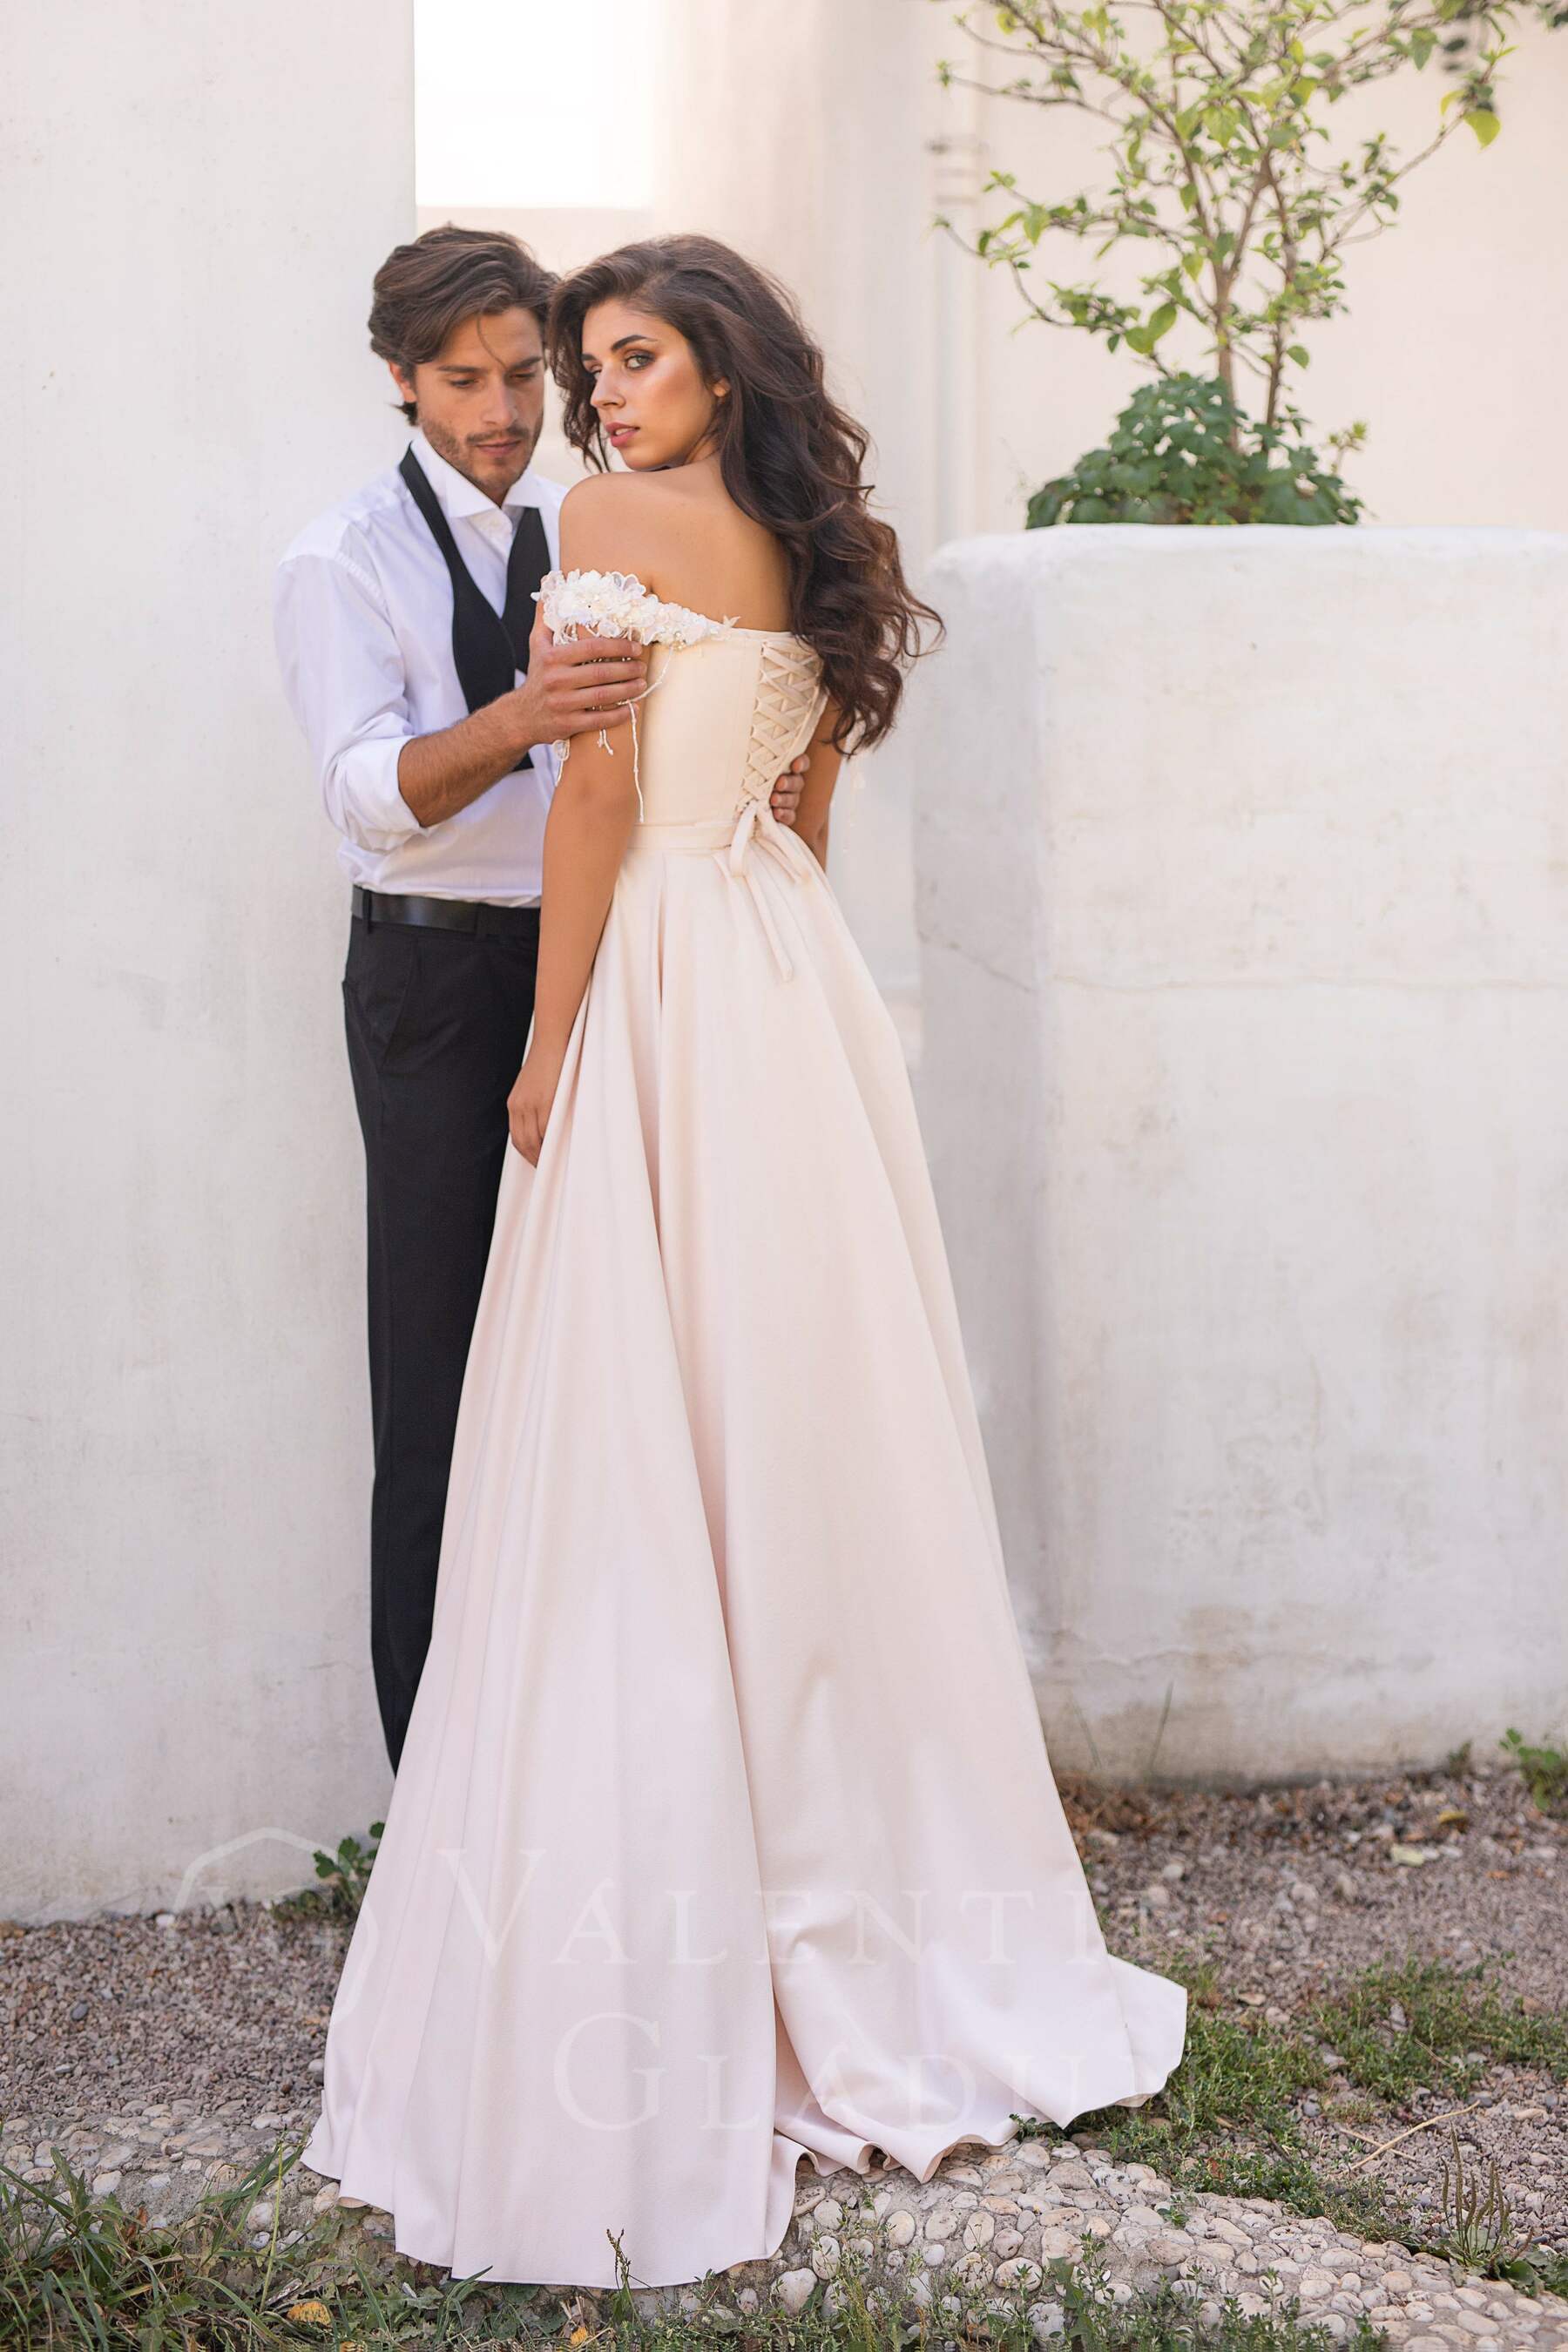 нежное свадебное платье с открытыми плечами Да Винчи 2020